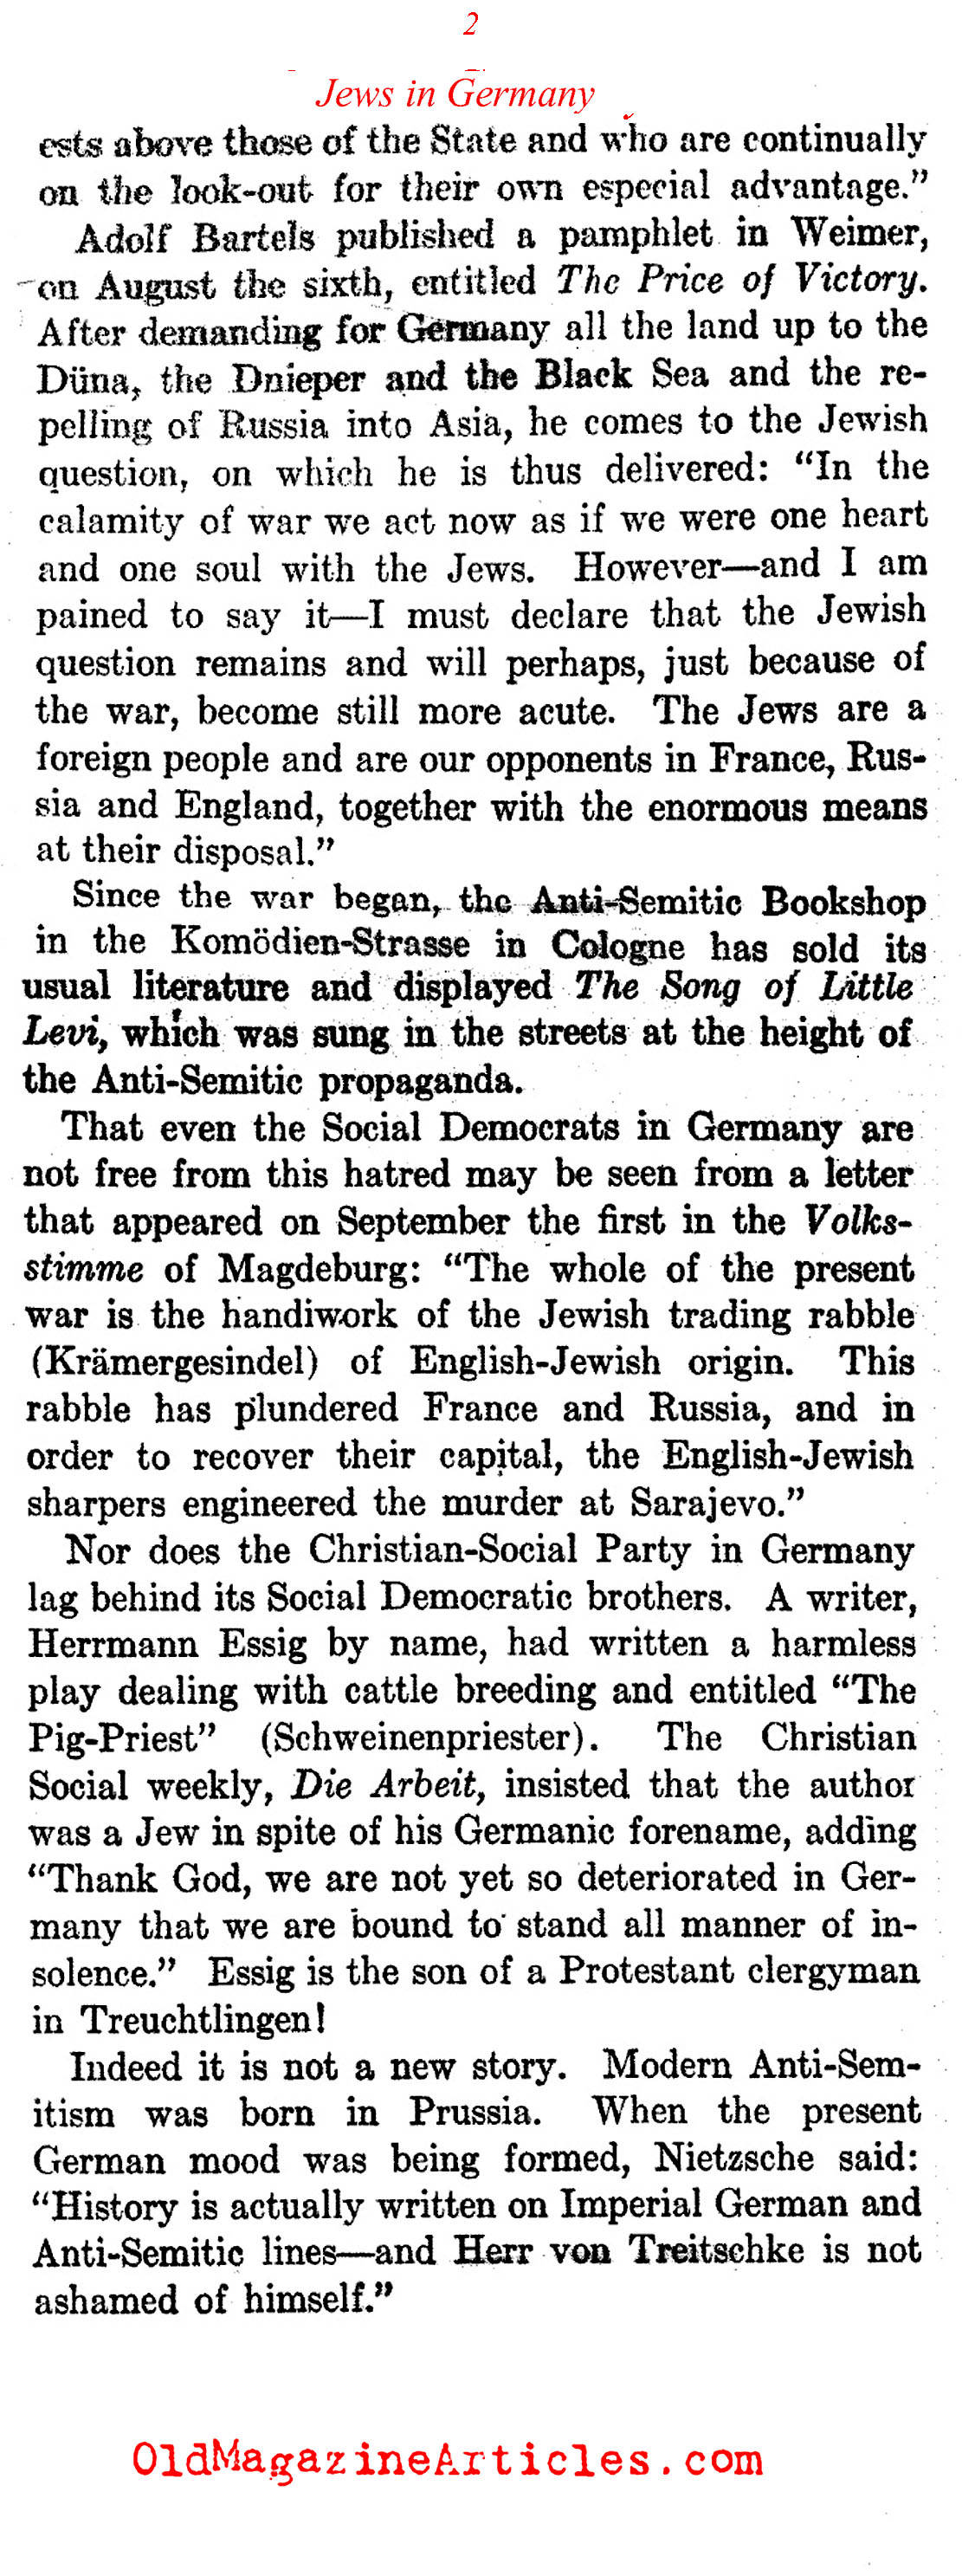 German Anti-Semitism in 1915 (Harper's Weekly, 1915)